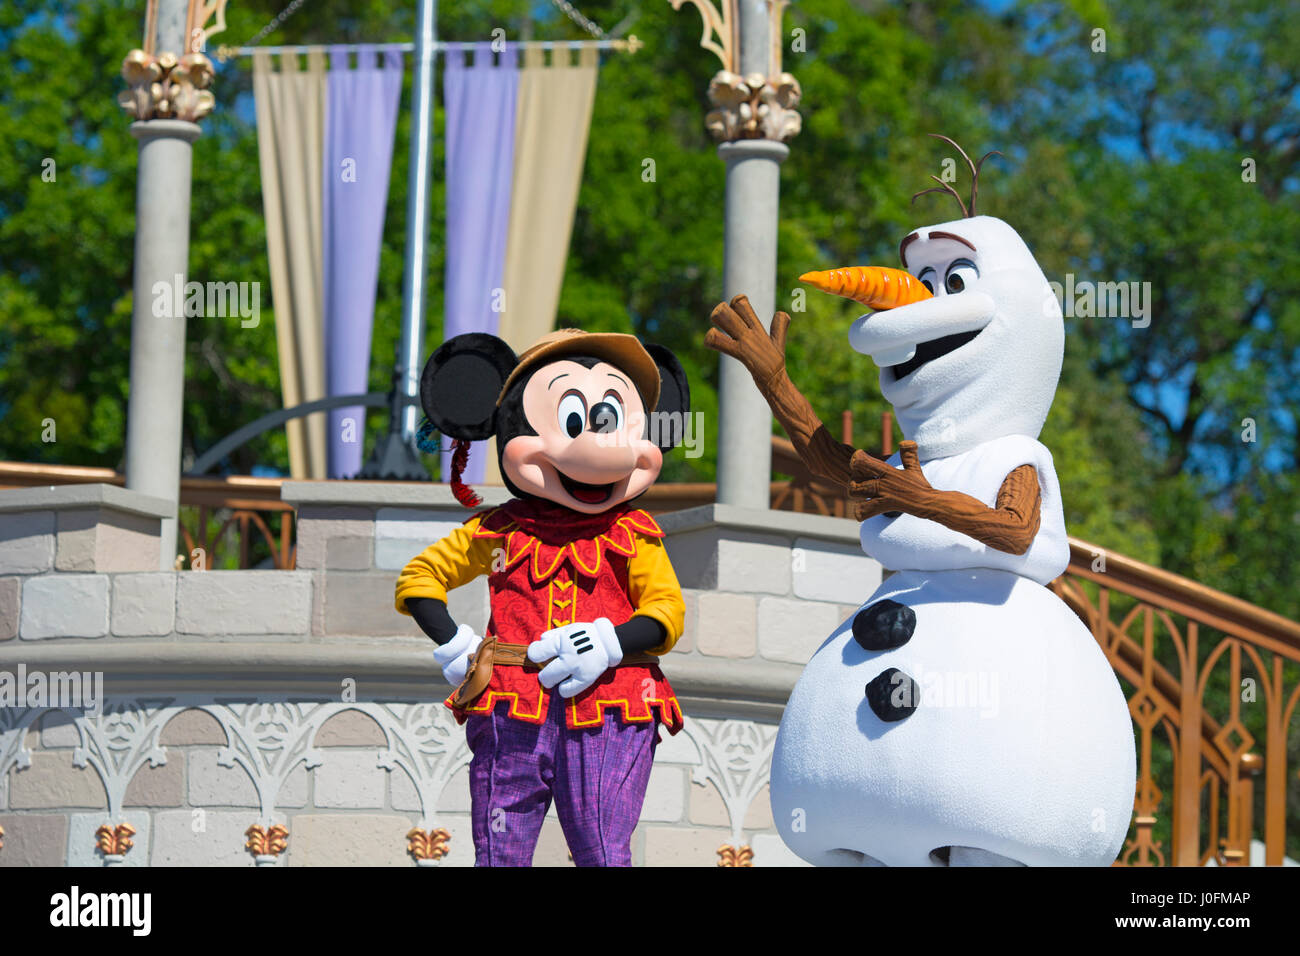 L'Olaf et Mickey Mouse, Disney caractère Olaf Film congelé, Disney World, Orlando, Floride Banque D'Images